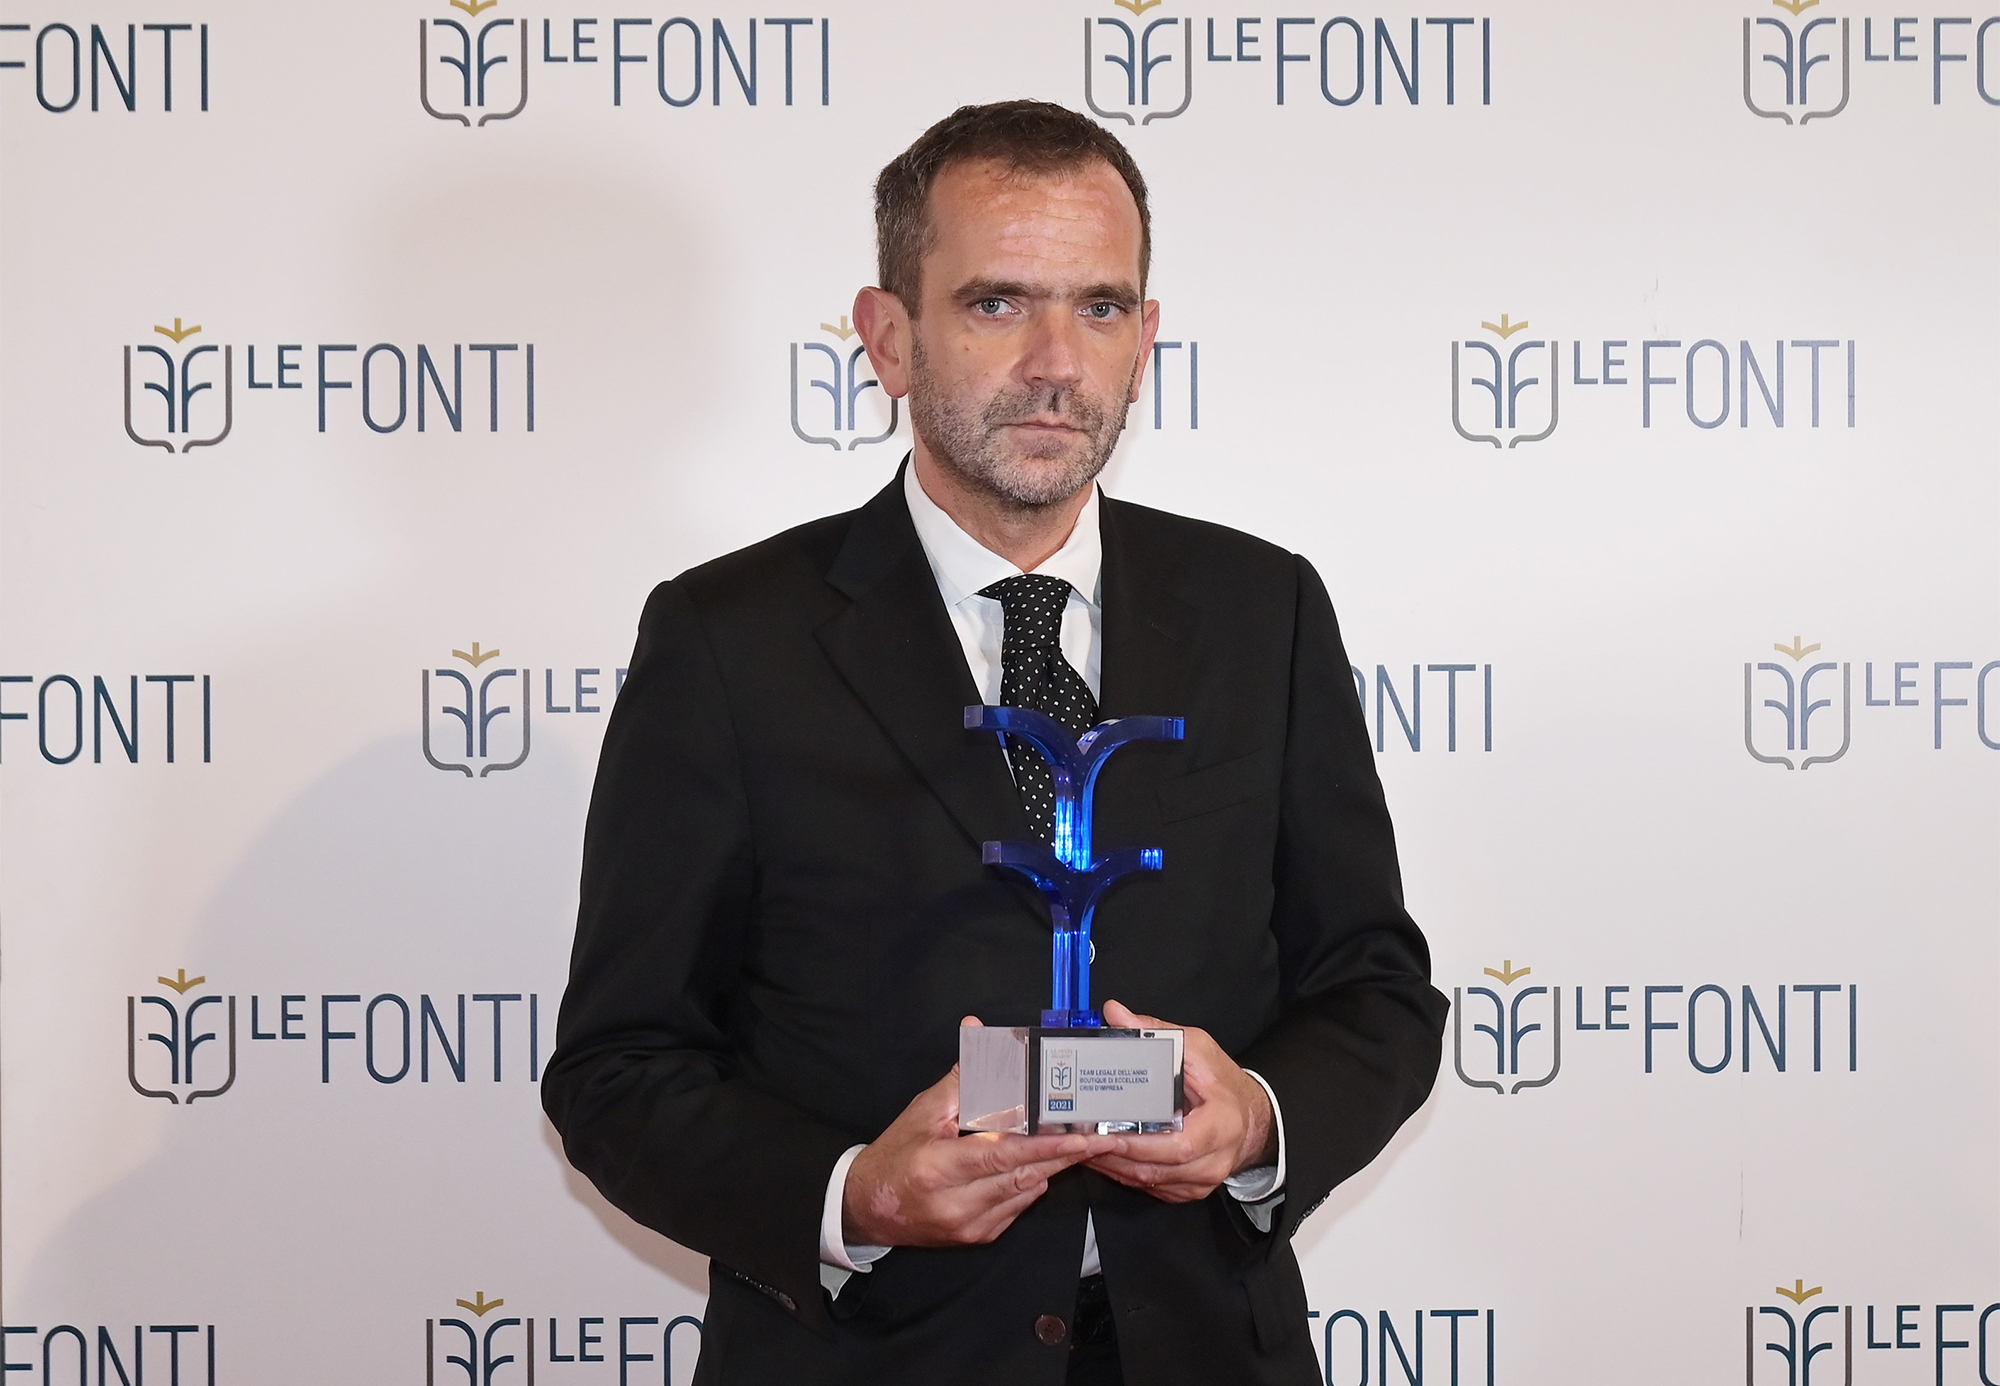 Maurizio Borra Le fonti awards